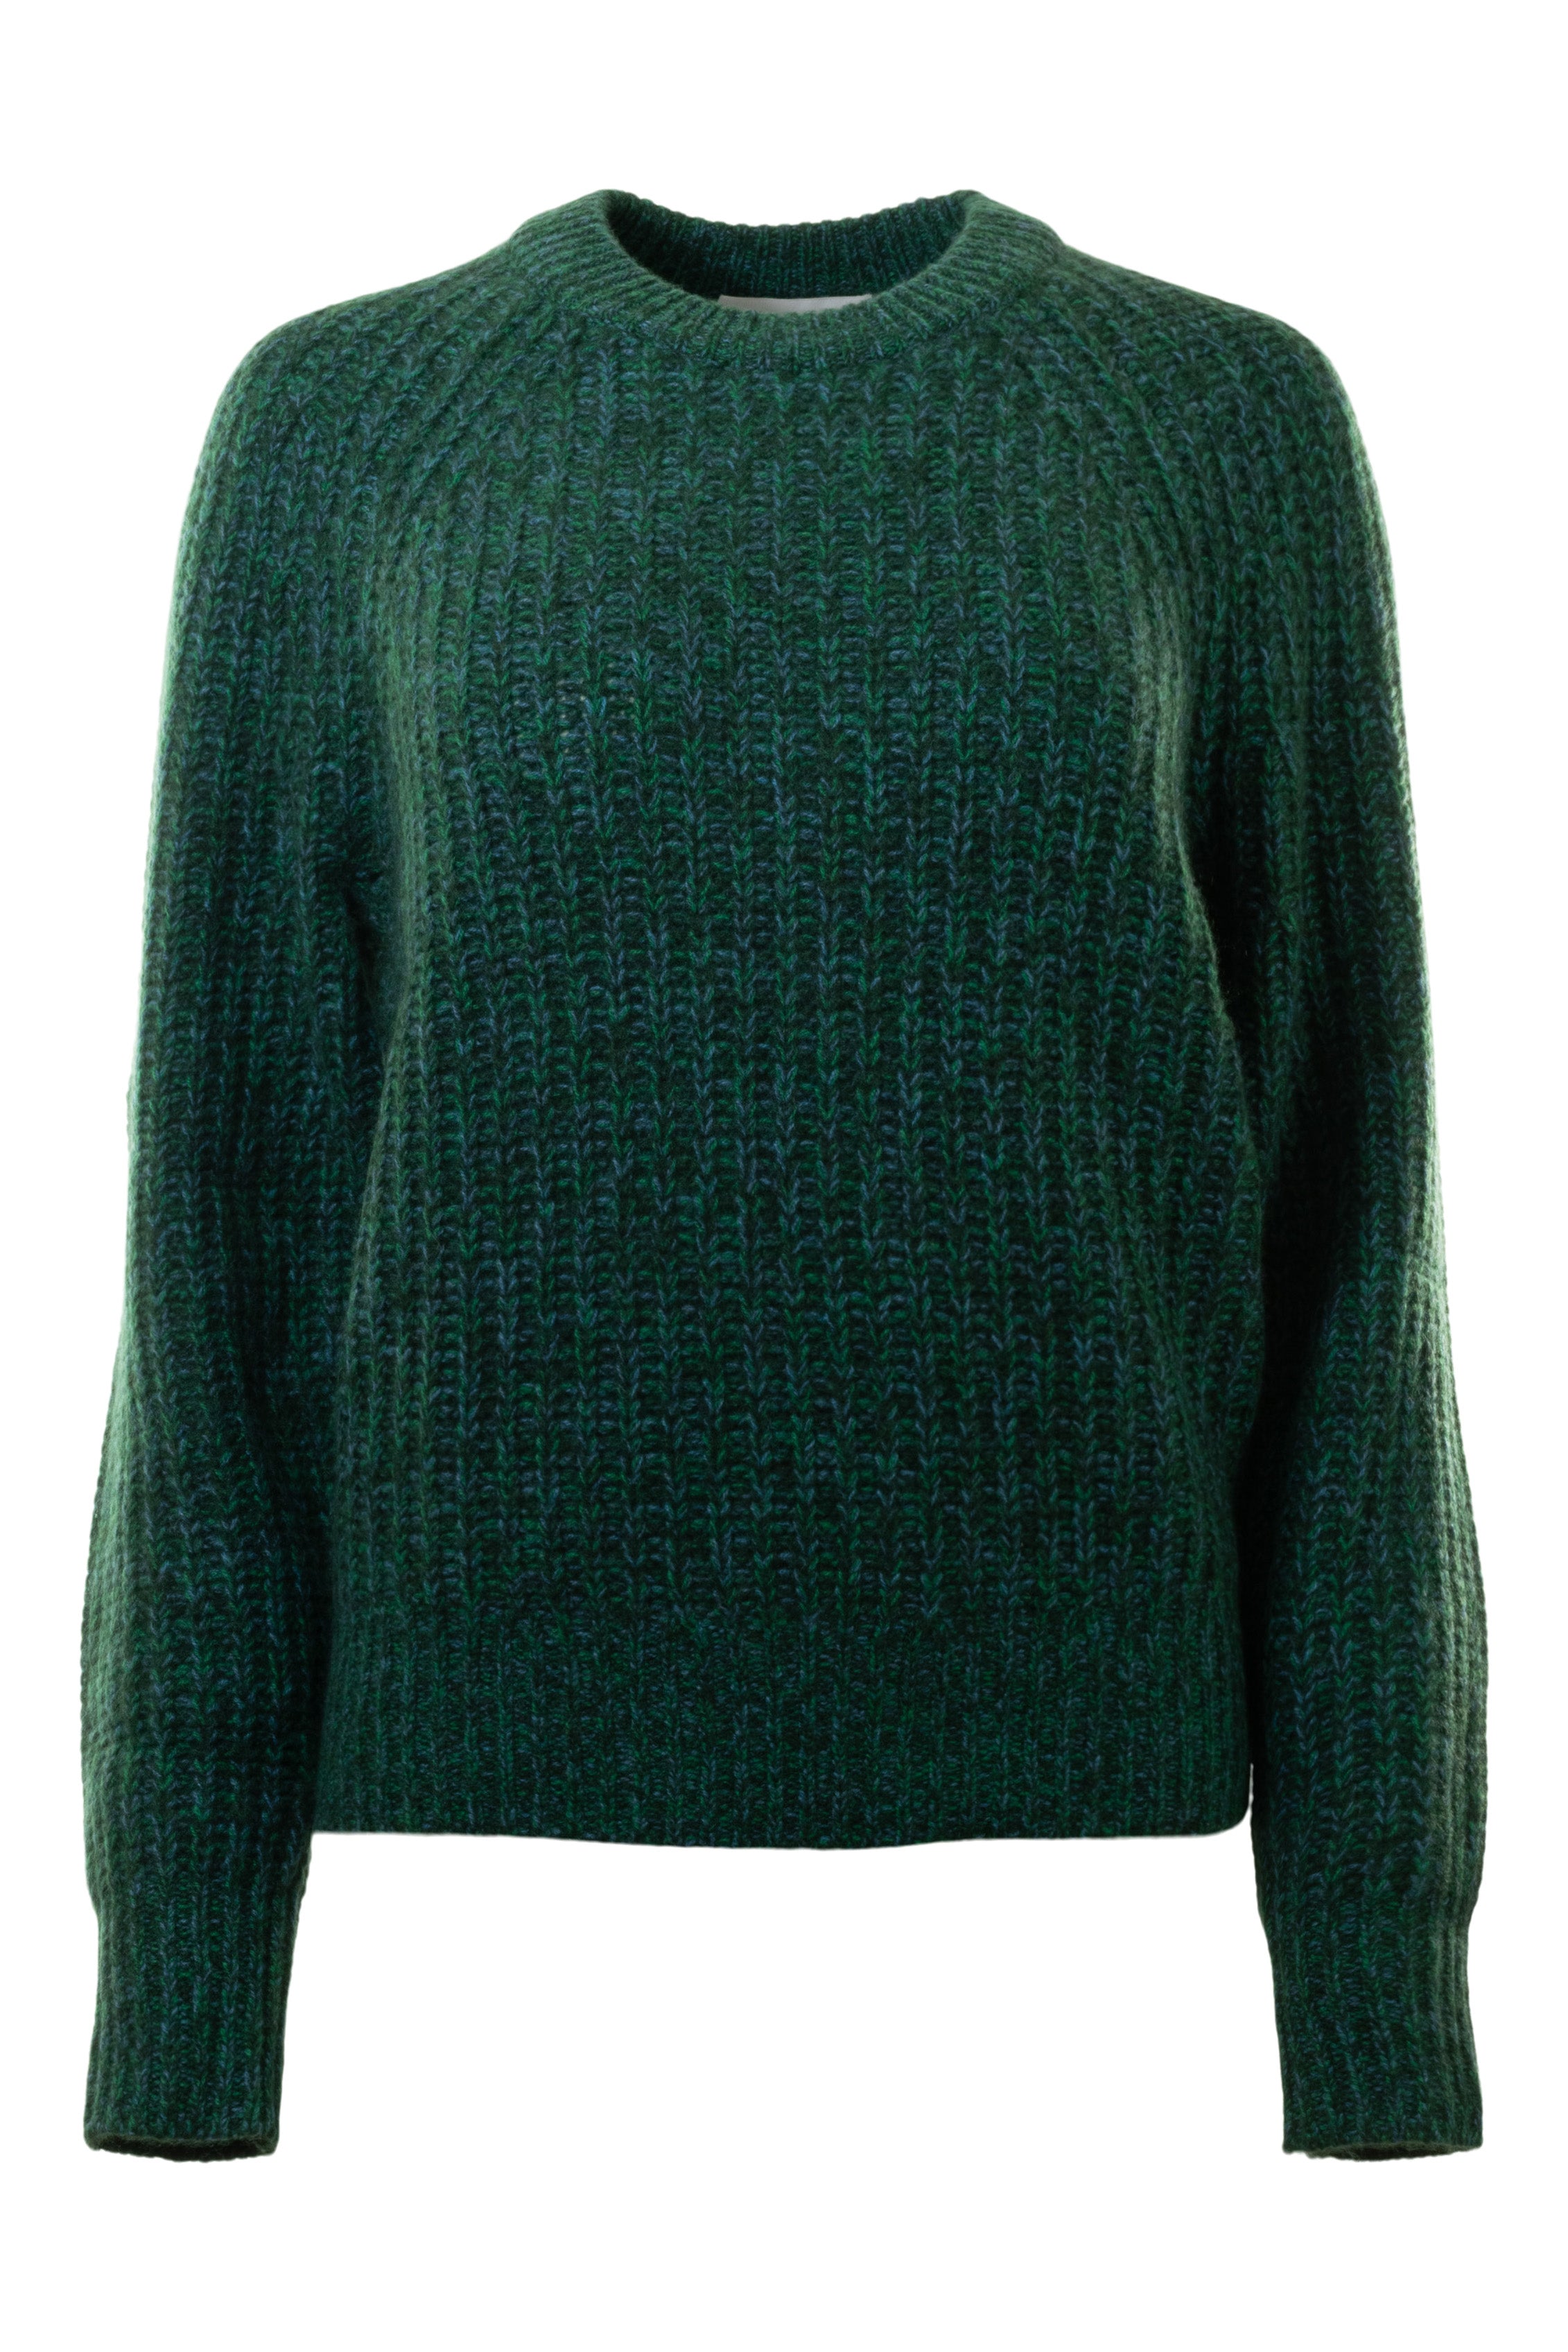 White & Warren Cashmere Sweater in Green Marl